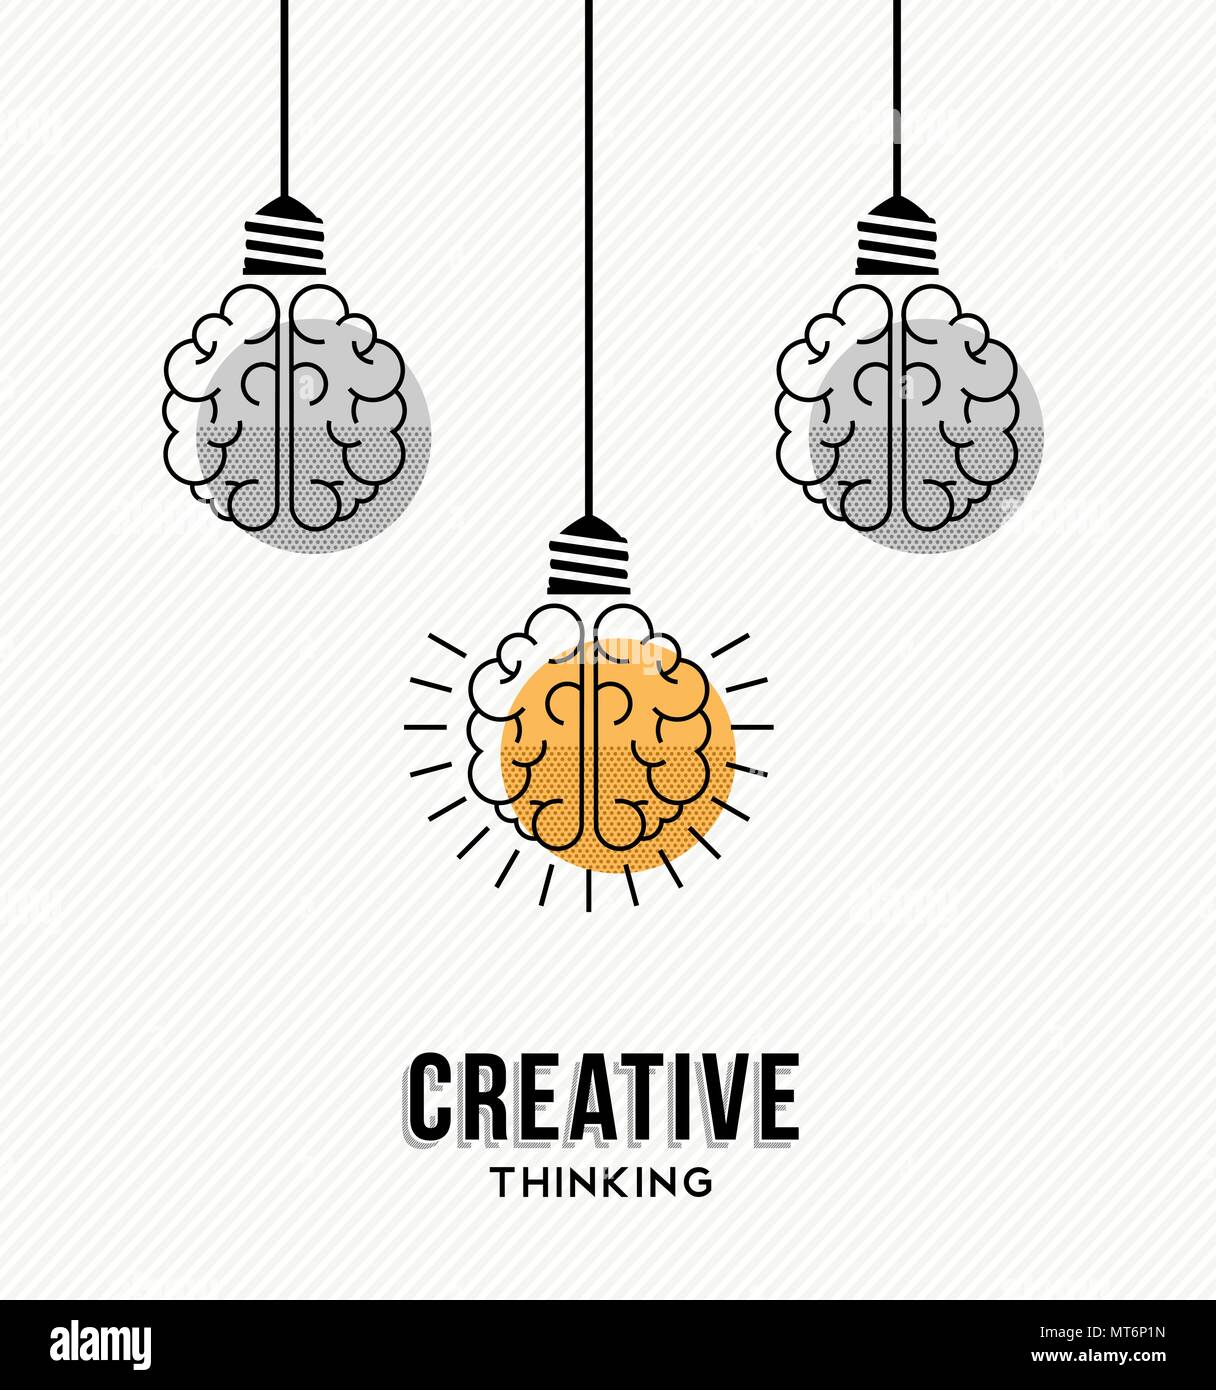 La pensée créative design moderne avec le cerveau humain comme lampe lumière colorée, la créativité d'entreprise concept. Vecteur EPS10. Illustration de Vecteur